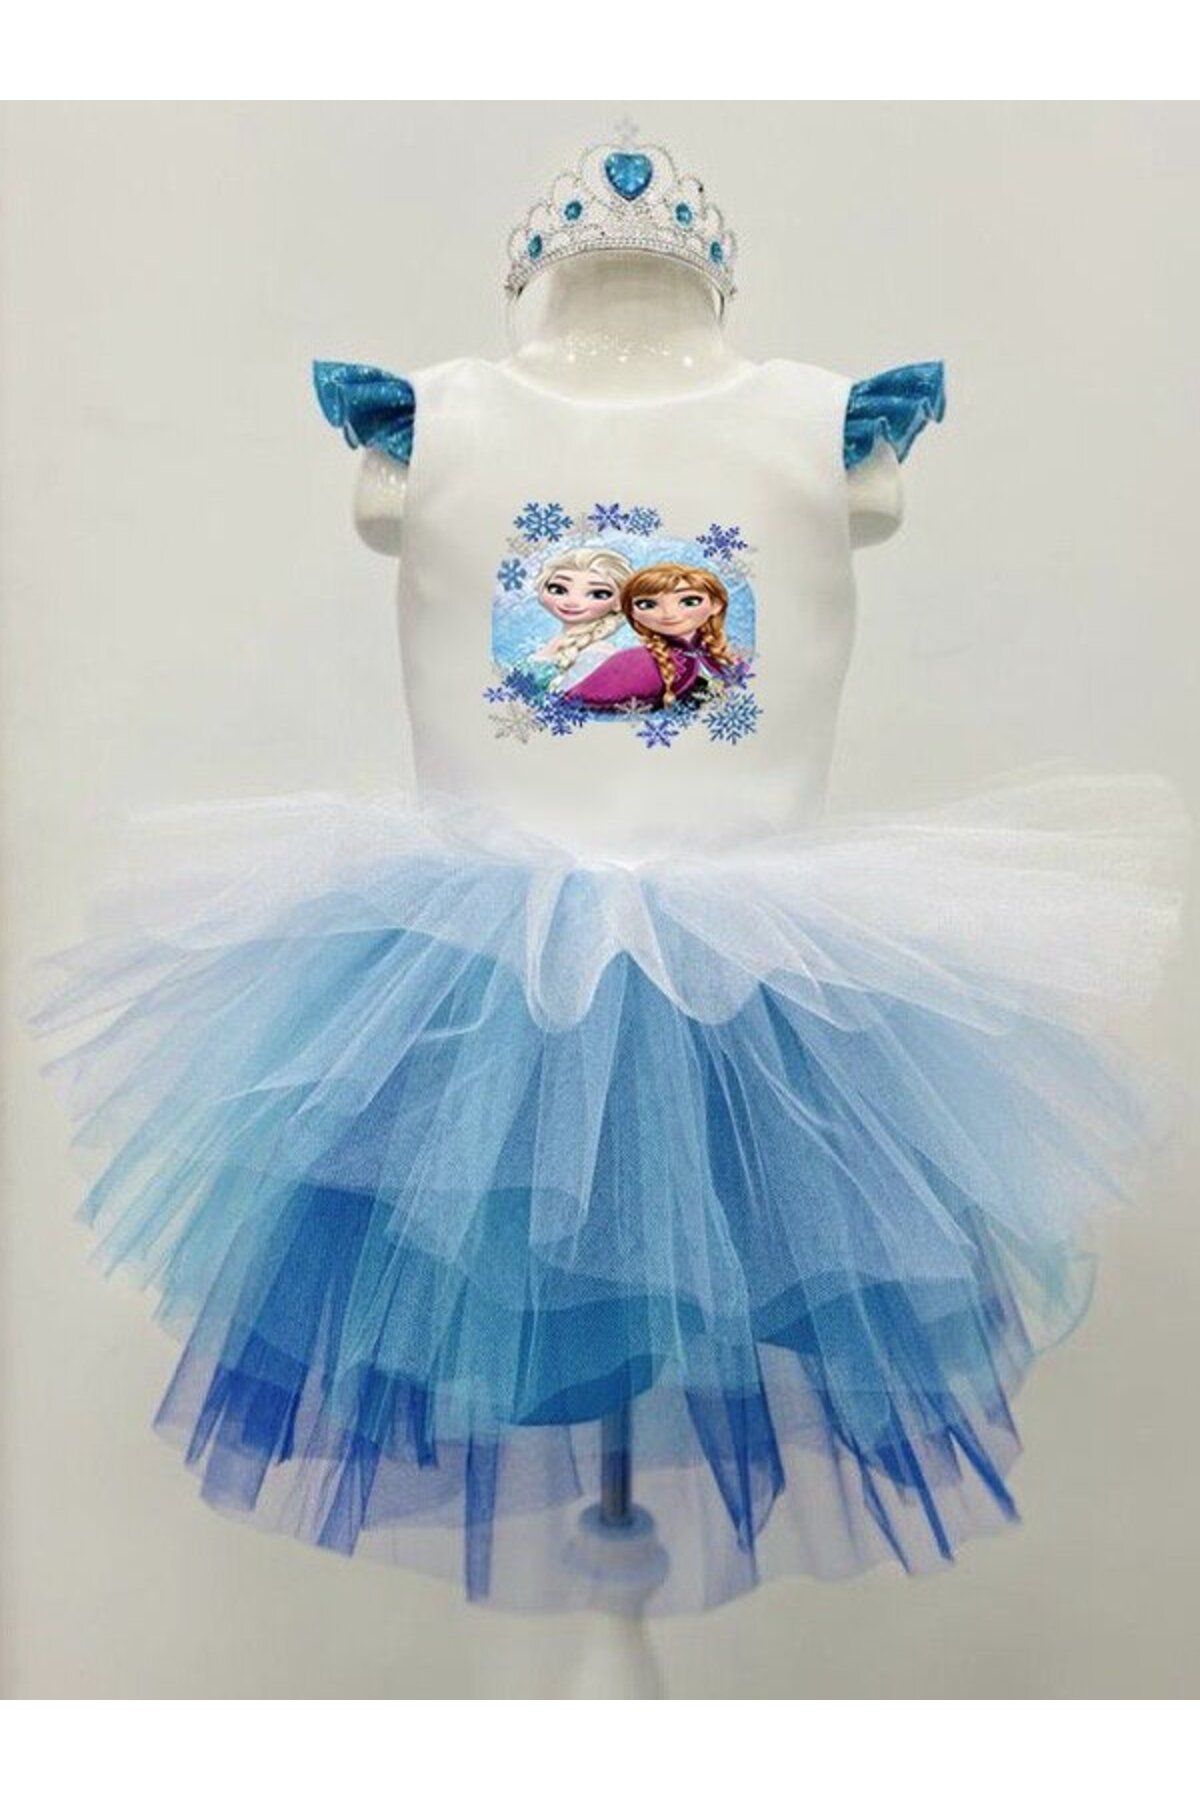 YAĞMUR KOStütüM Anna & Elsa Kız Çocuk Karlar Ülkesi Model Doğum Günü Parti Elbisesi Kostümü